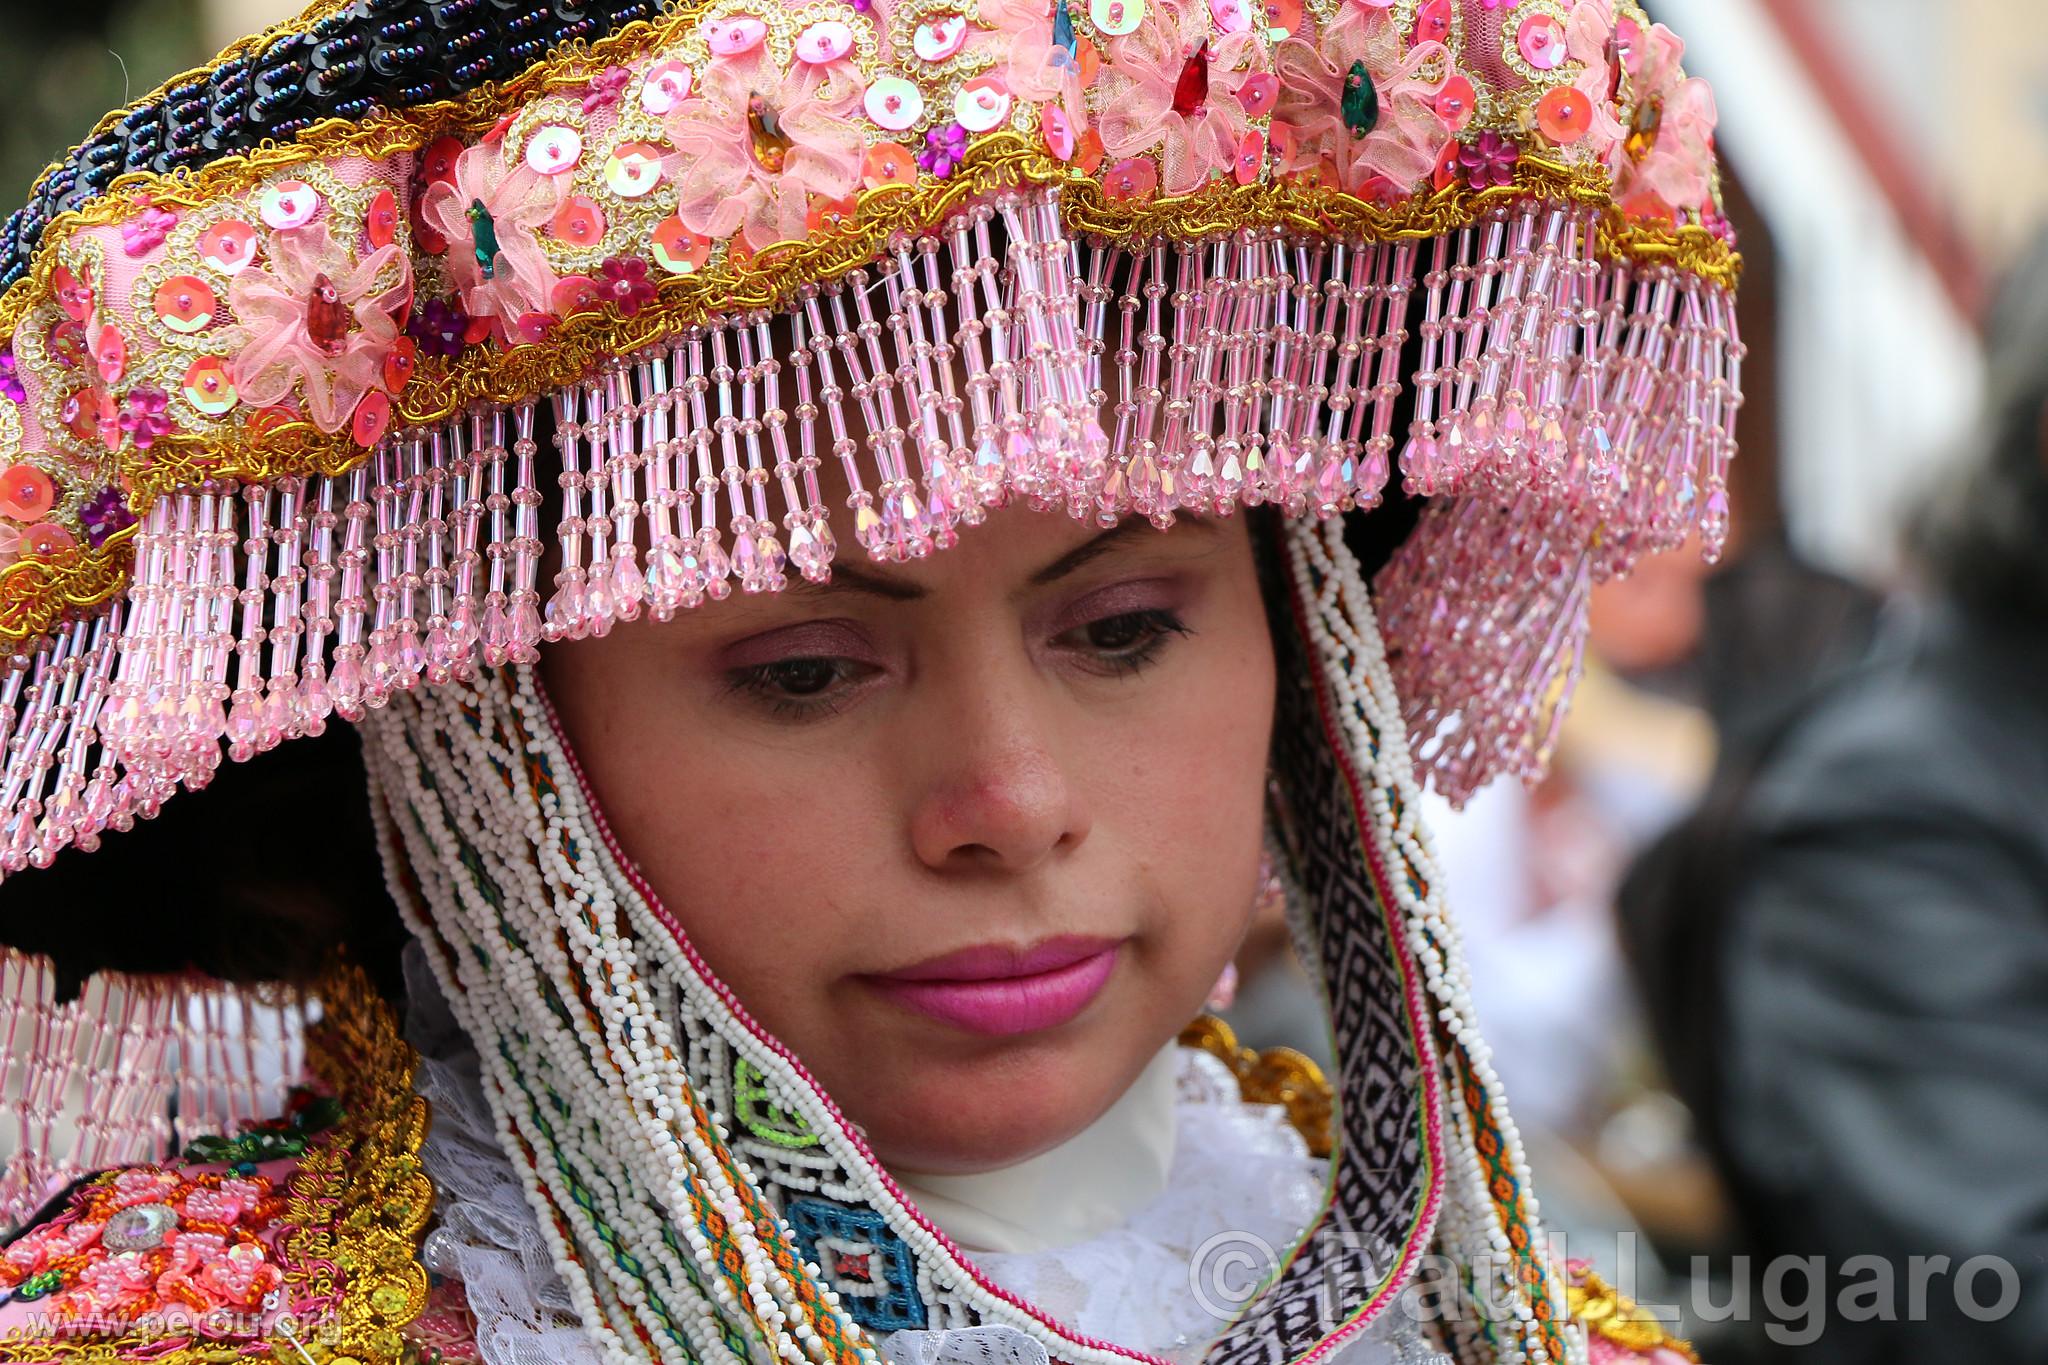 Procession de la Vierge de Carmen, Lima